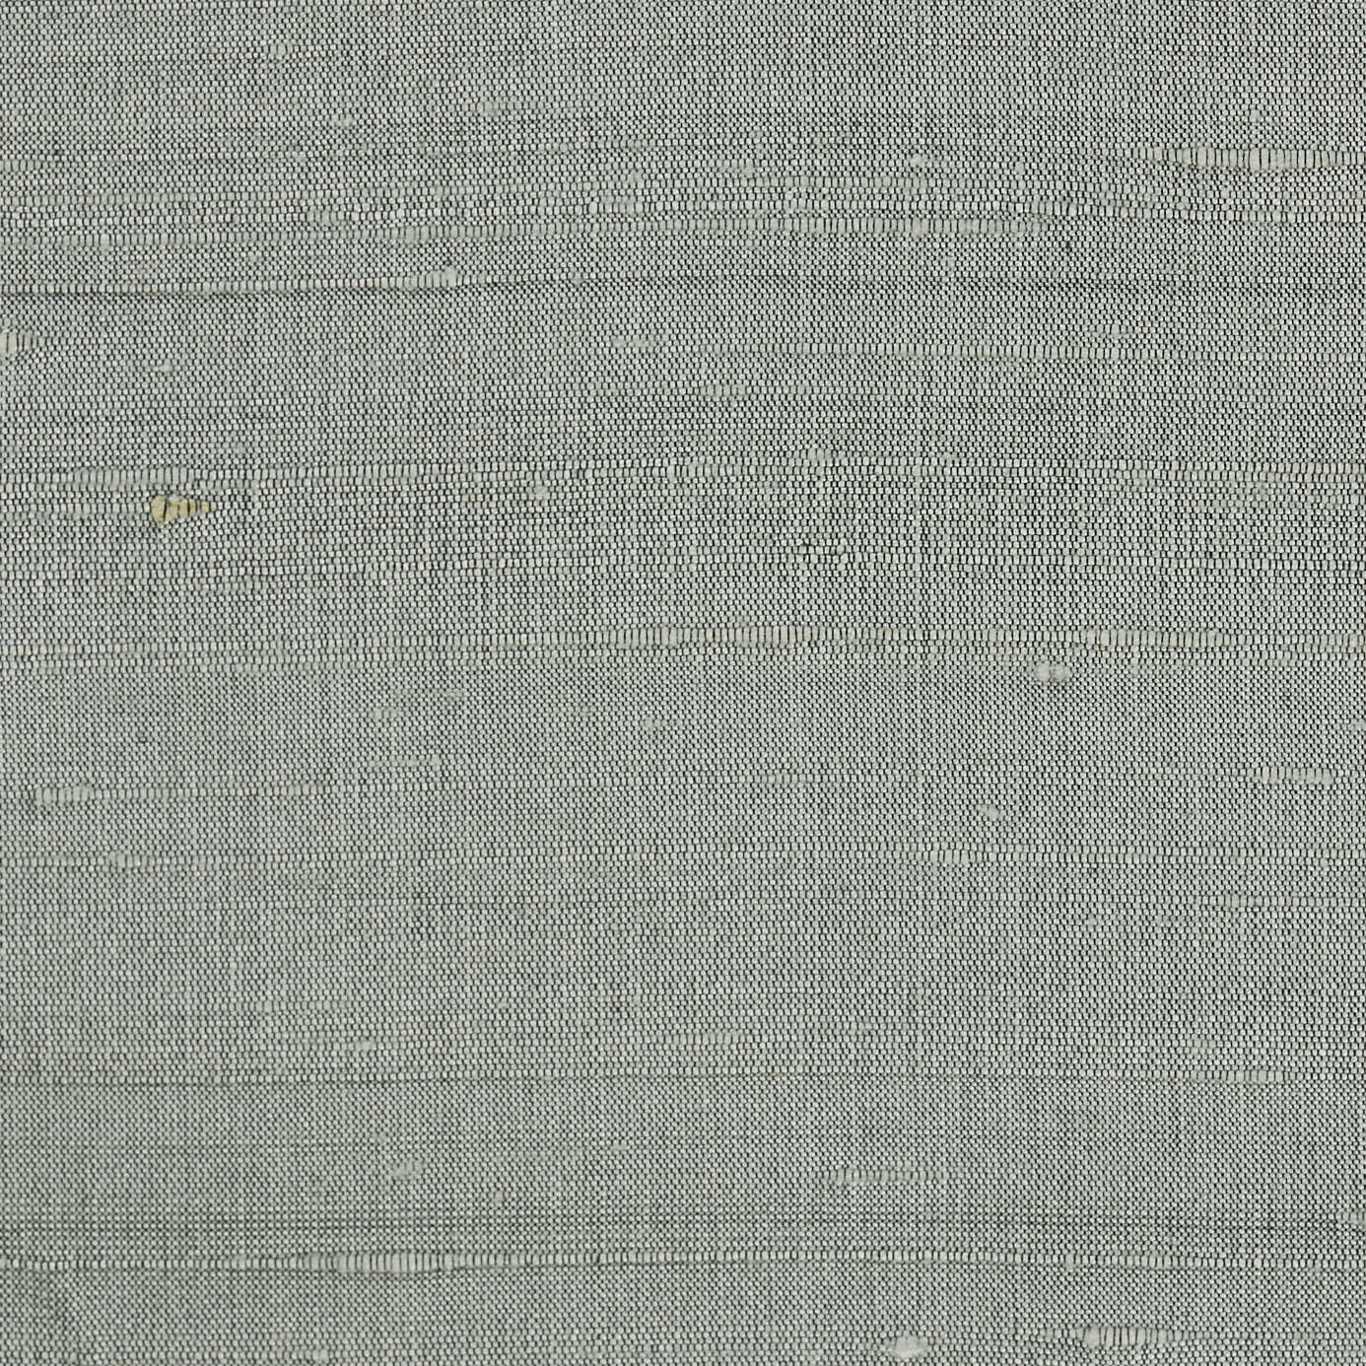 Laminar Swedish Grey Fabric by HAR